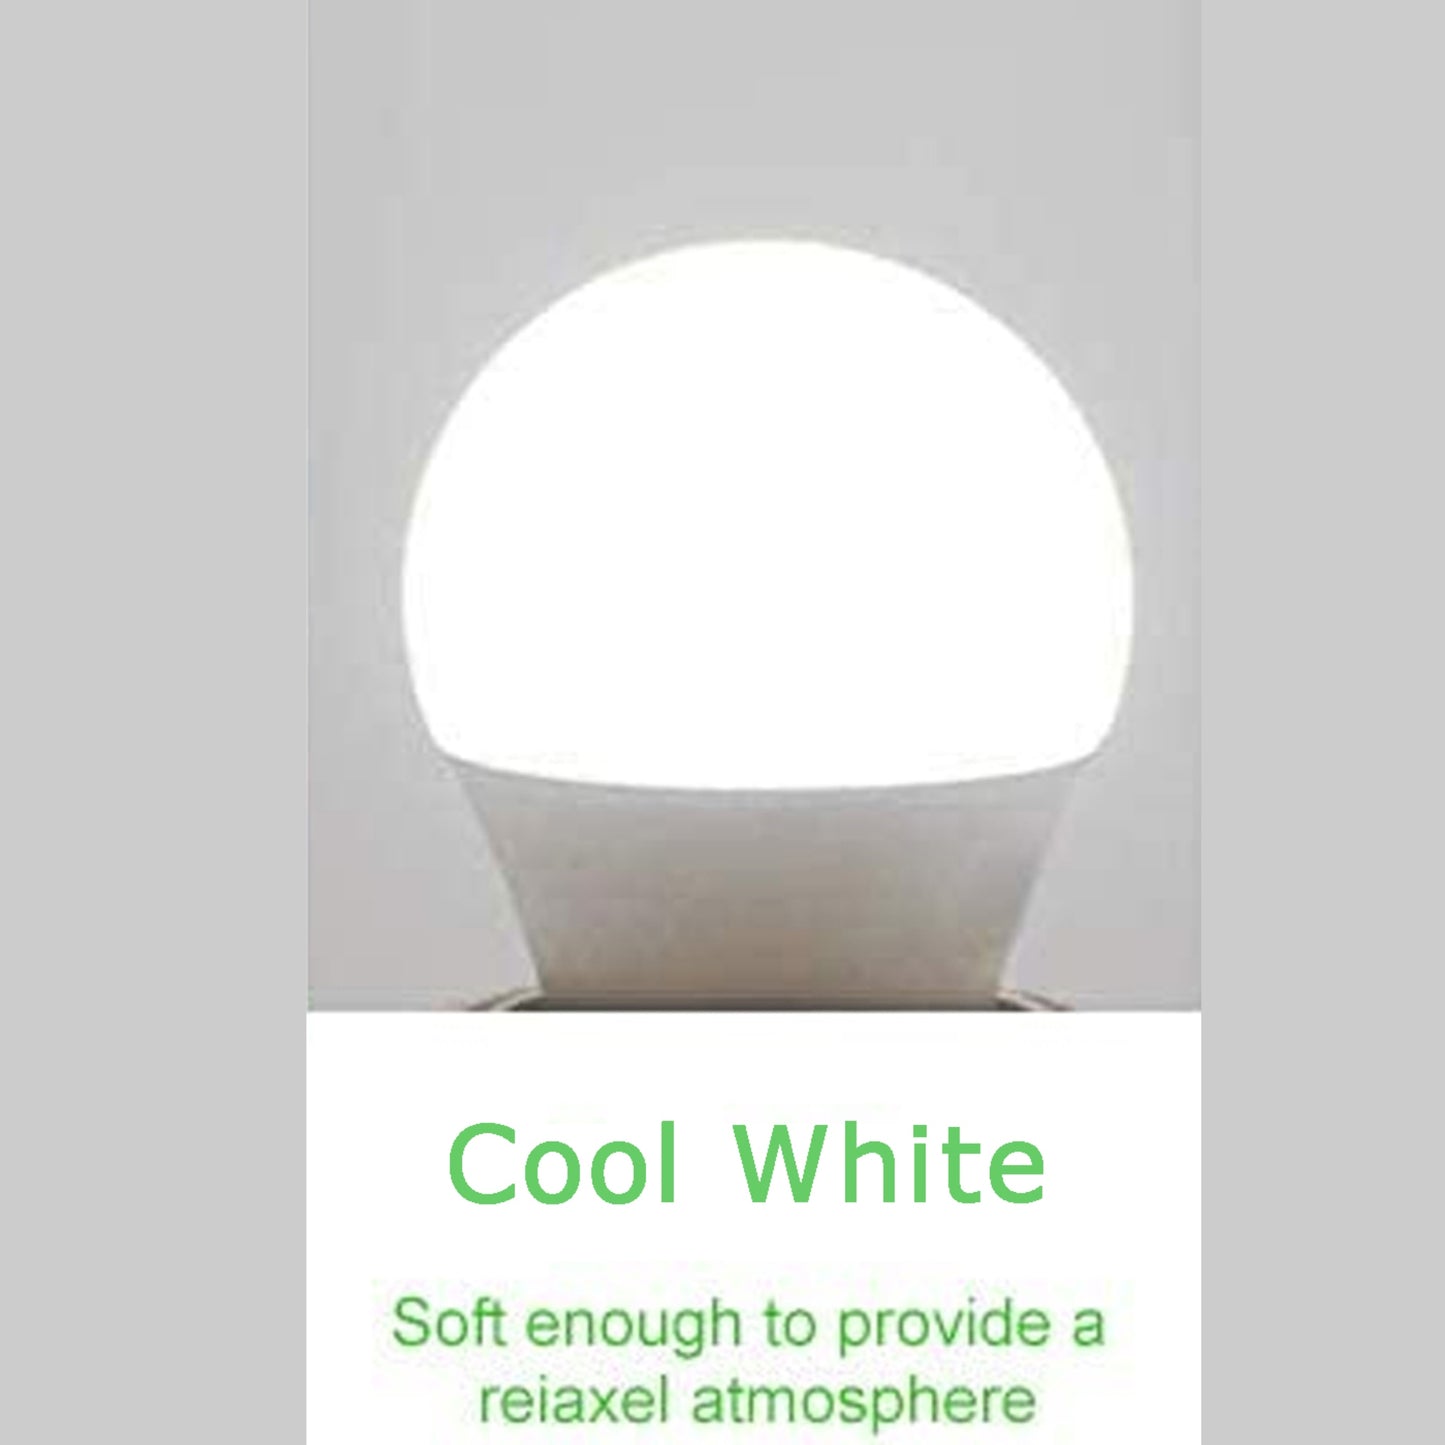 9 W B22 Schraub-LED-Licht GLS-Lampen, energiesparende Edison Cool White 6000 K nicht dimmbare Lichter